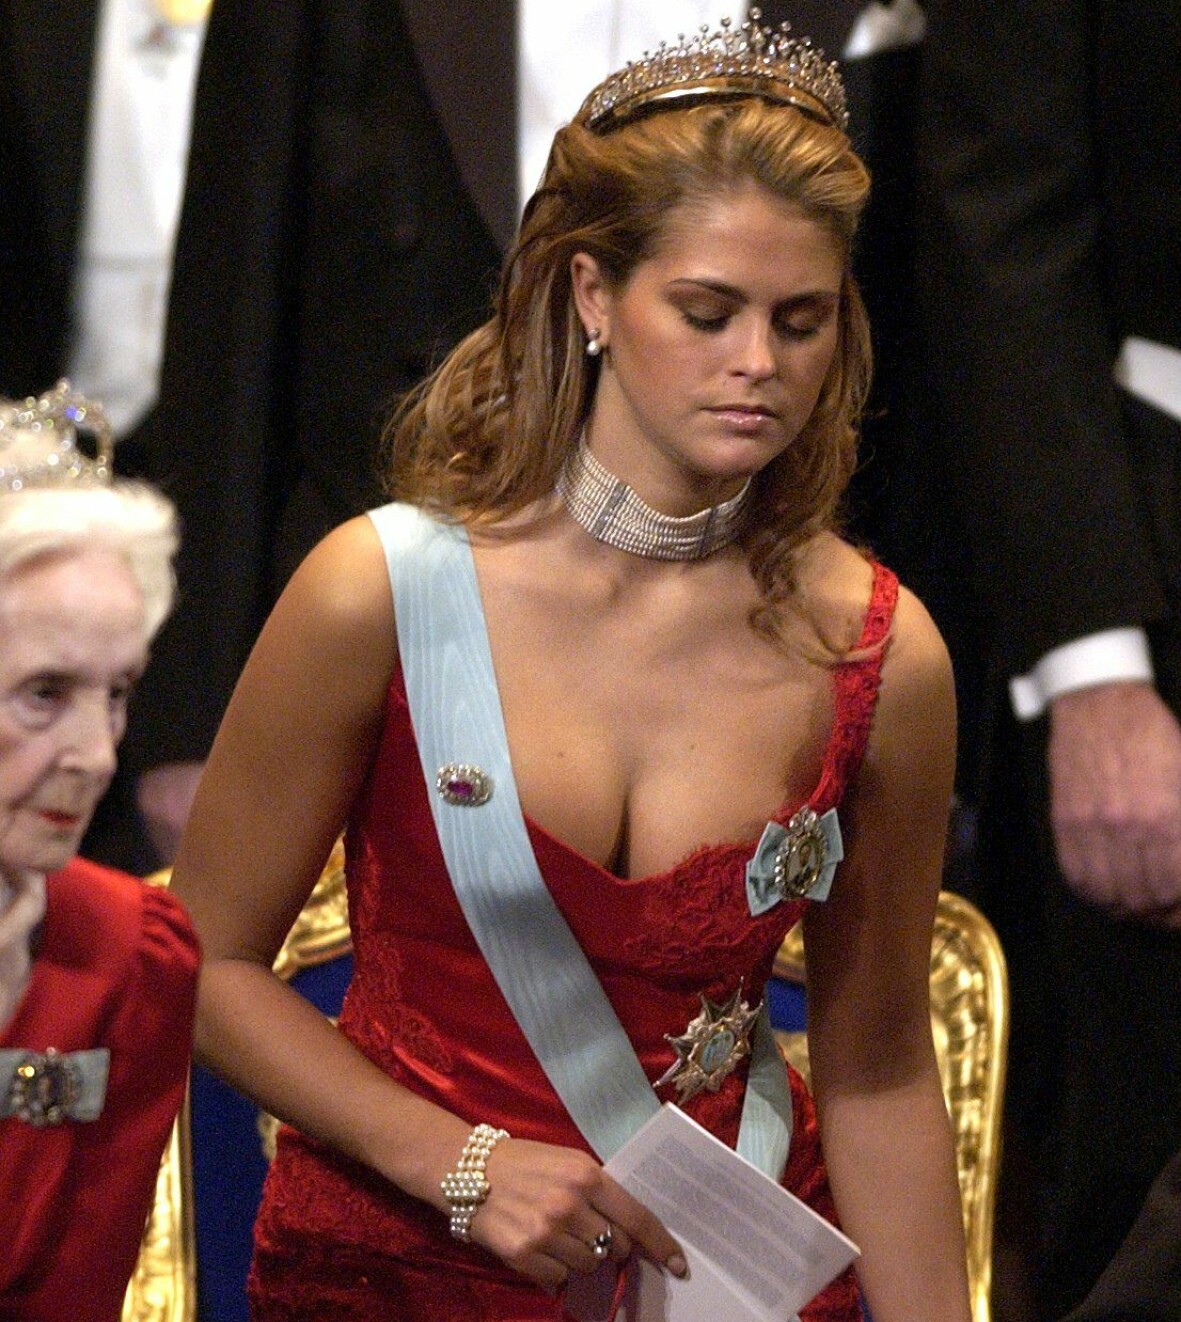 Prinsessan Madeleine på Nobelfest i röd klänning